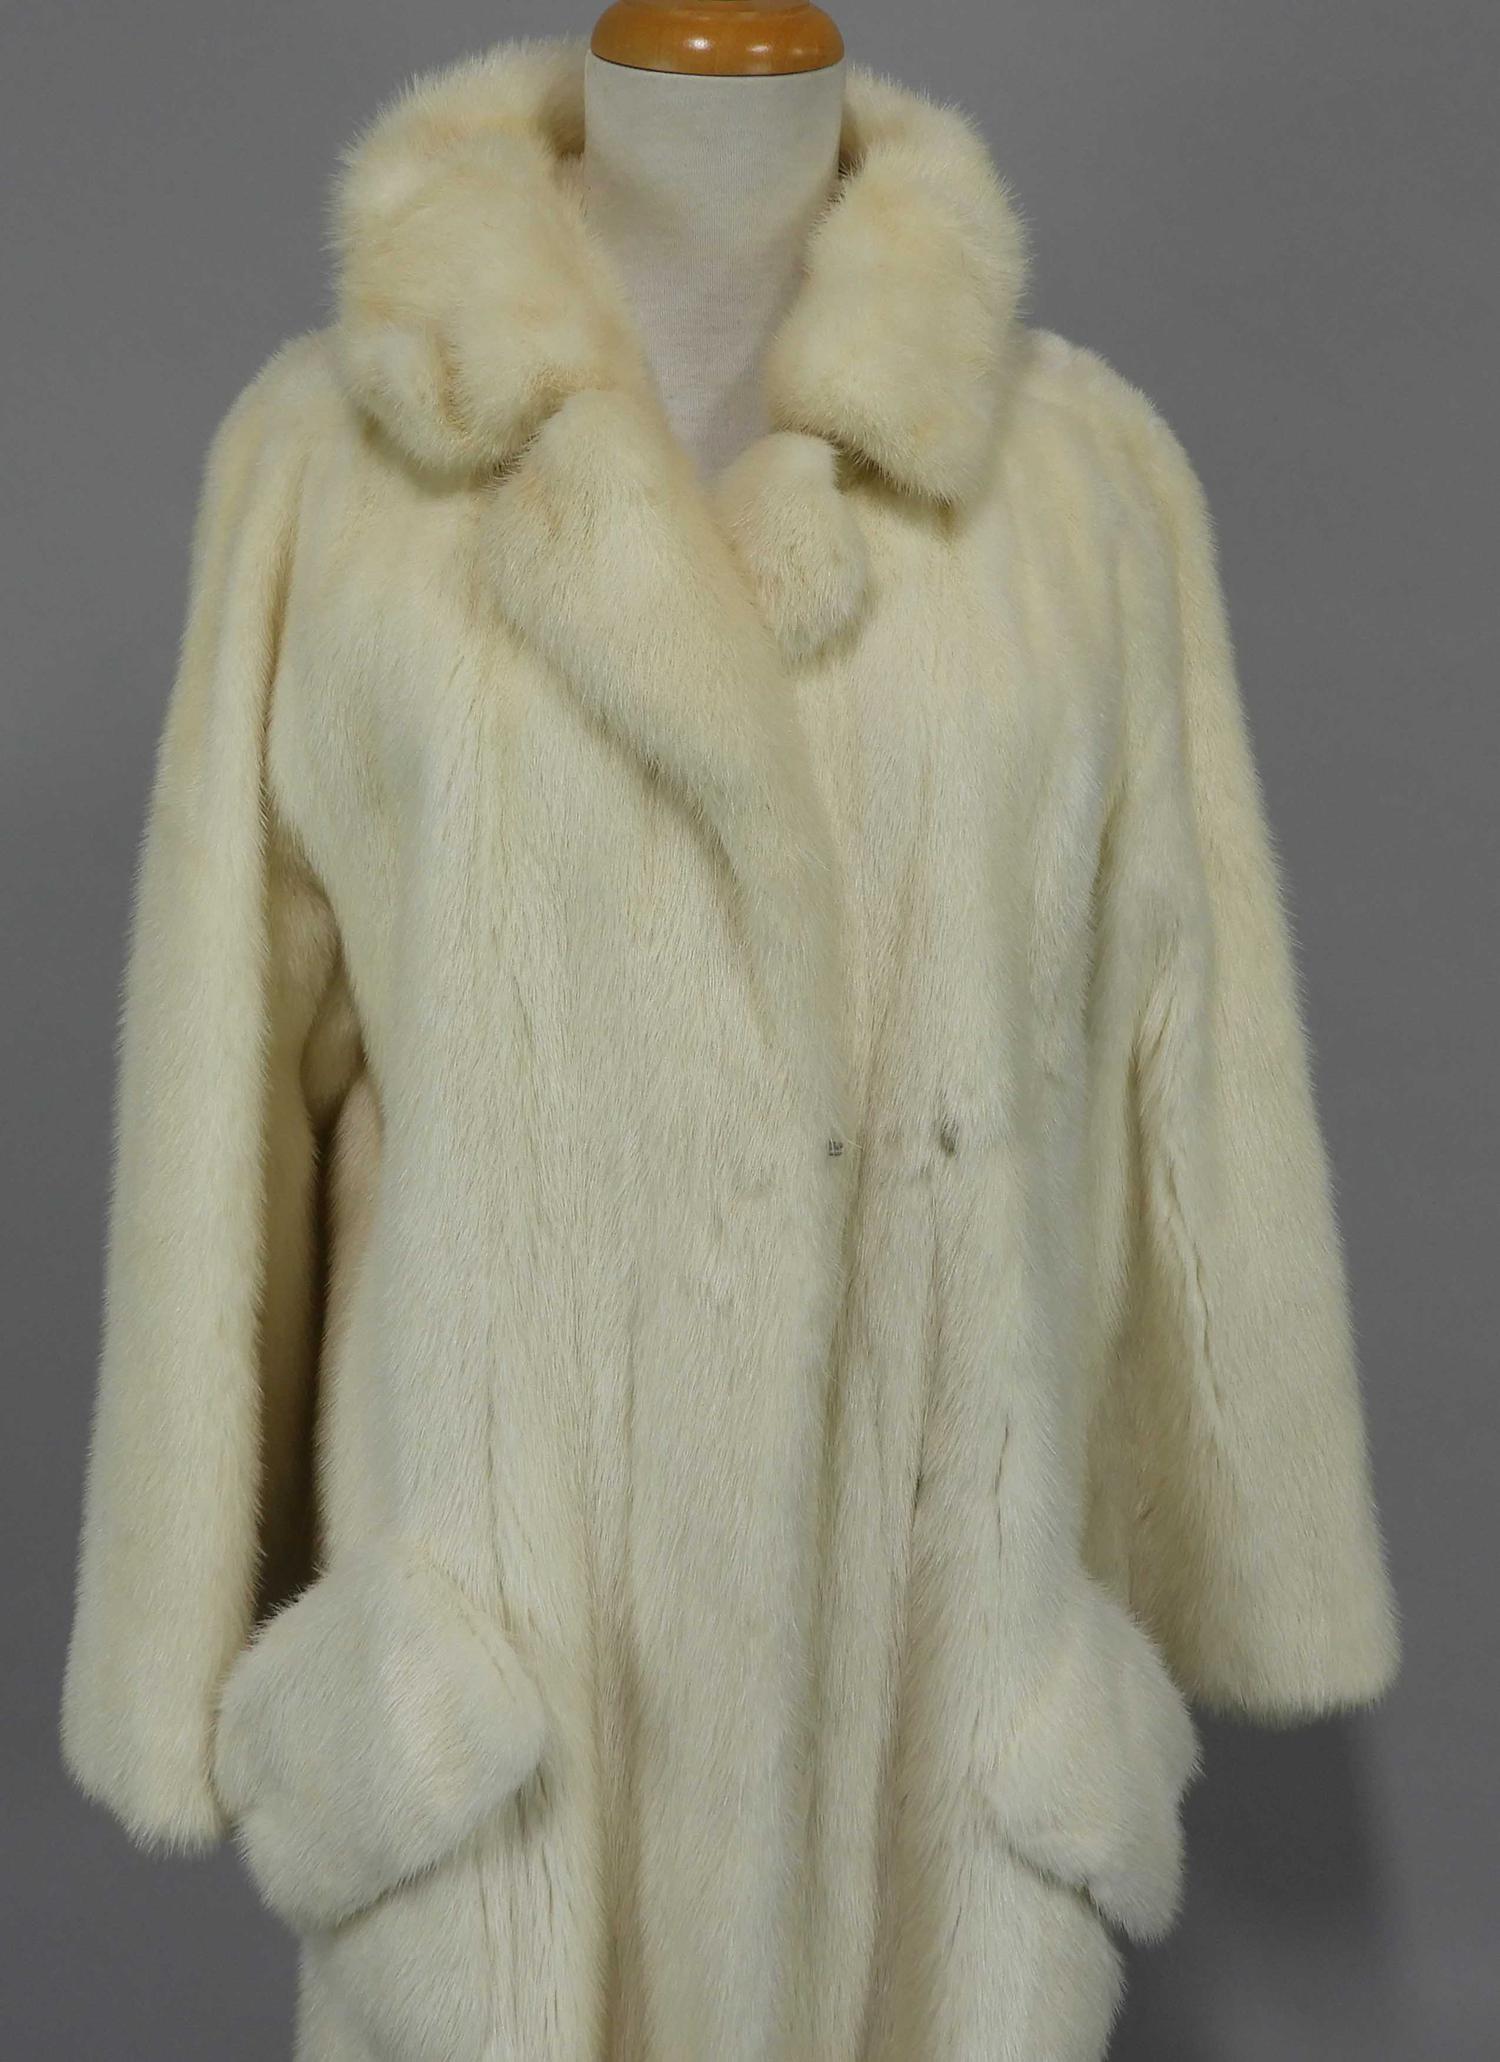 Murrays Auctioneers - Lot 26f: Full length white mink coat, Holt Renfrew